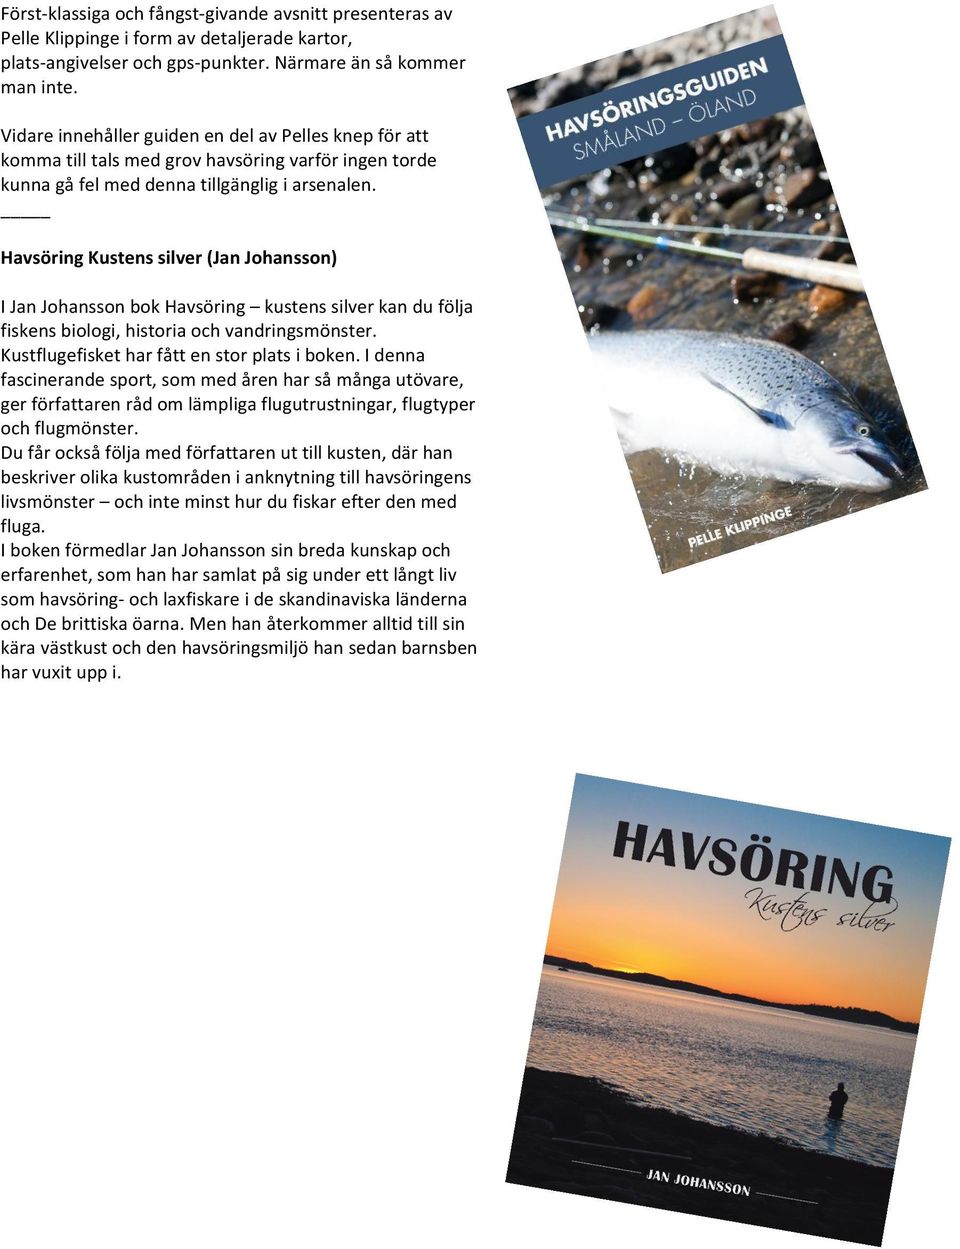 Havsöring Kustens silver (Jan Johansson) I Jan Johansson bok Havsöring kustens silver kan du följa fiskens biologi, historia och vandringsmönster. Kustflugefisket har fått en stor plats i boken.